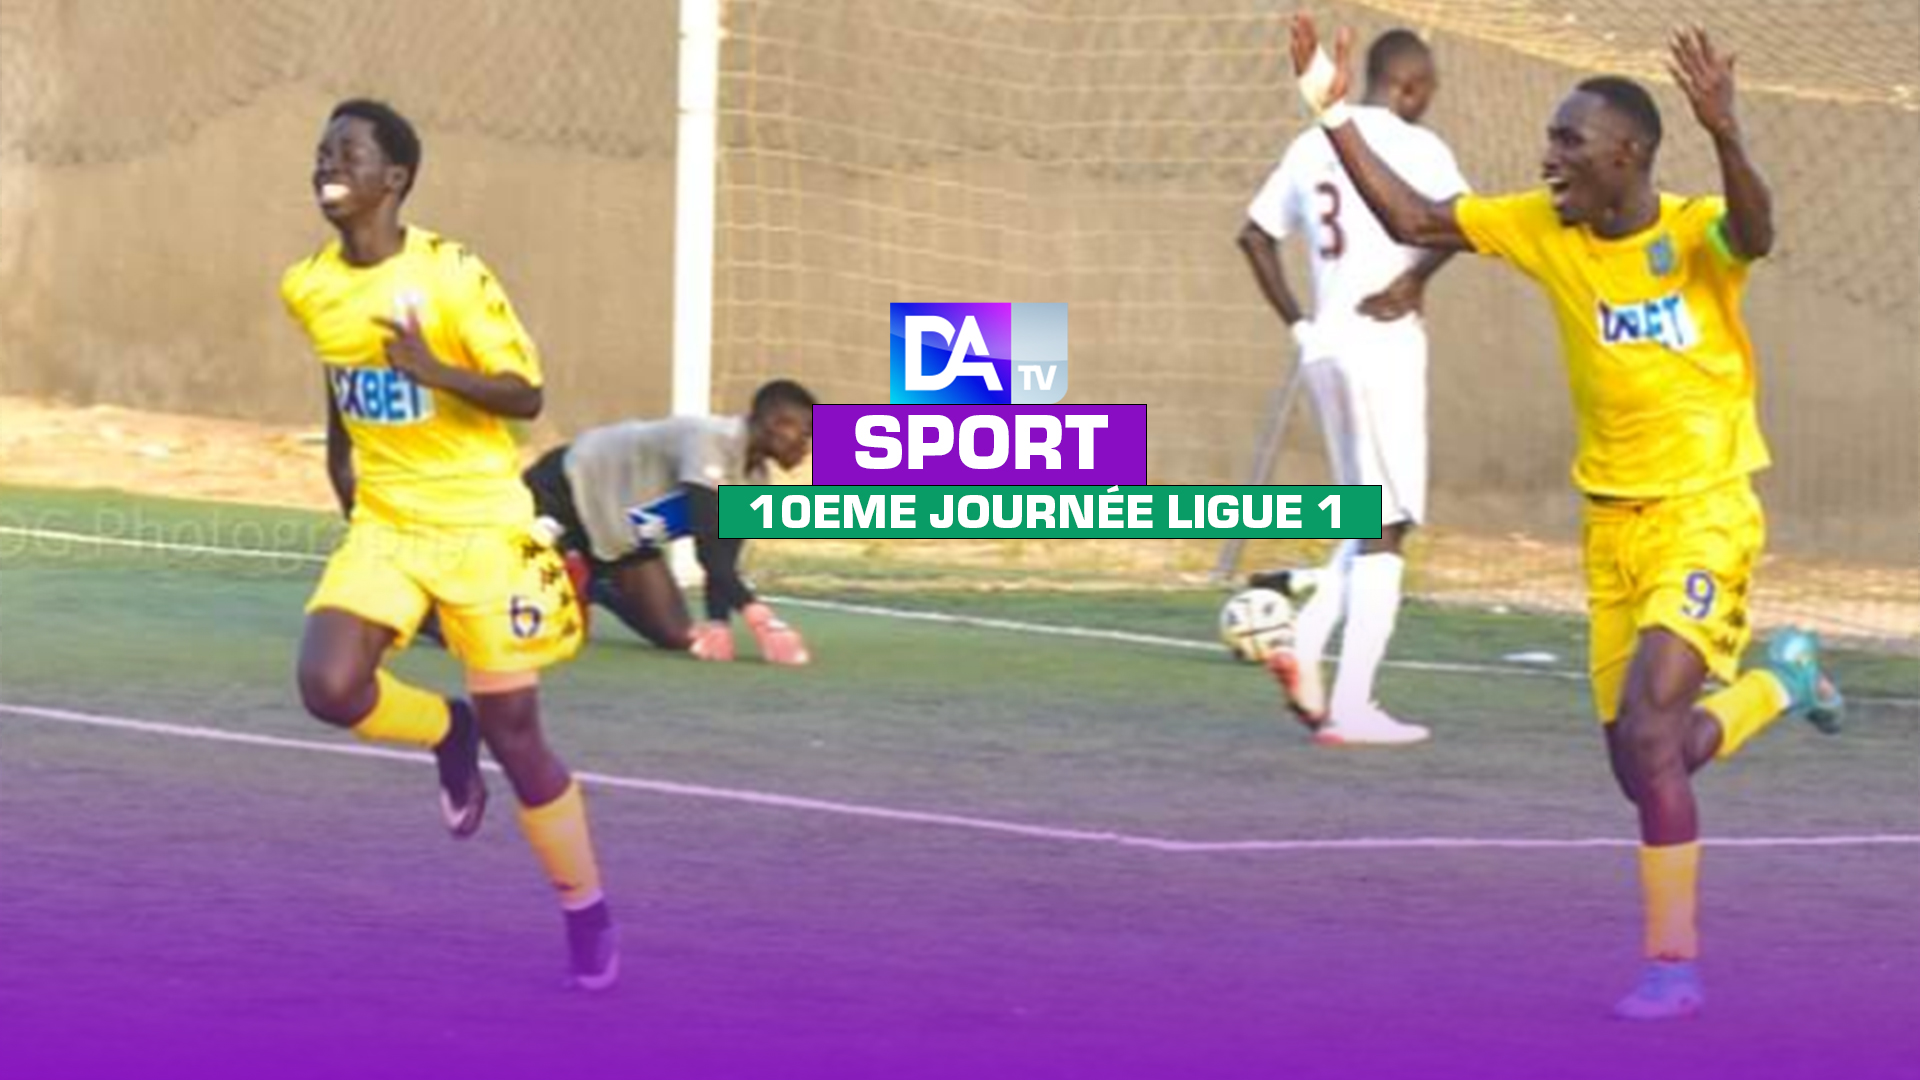 10ème journée Ligue 1 : Le leader Guédiawaye surprend Teungueth FC à domicile, et conserve la tête du classement